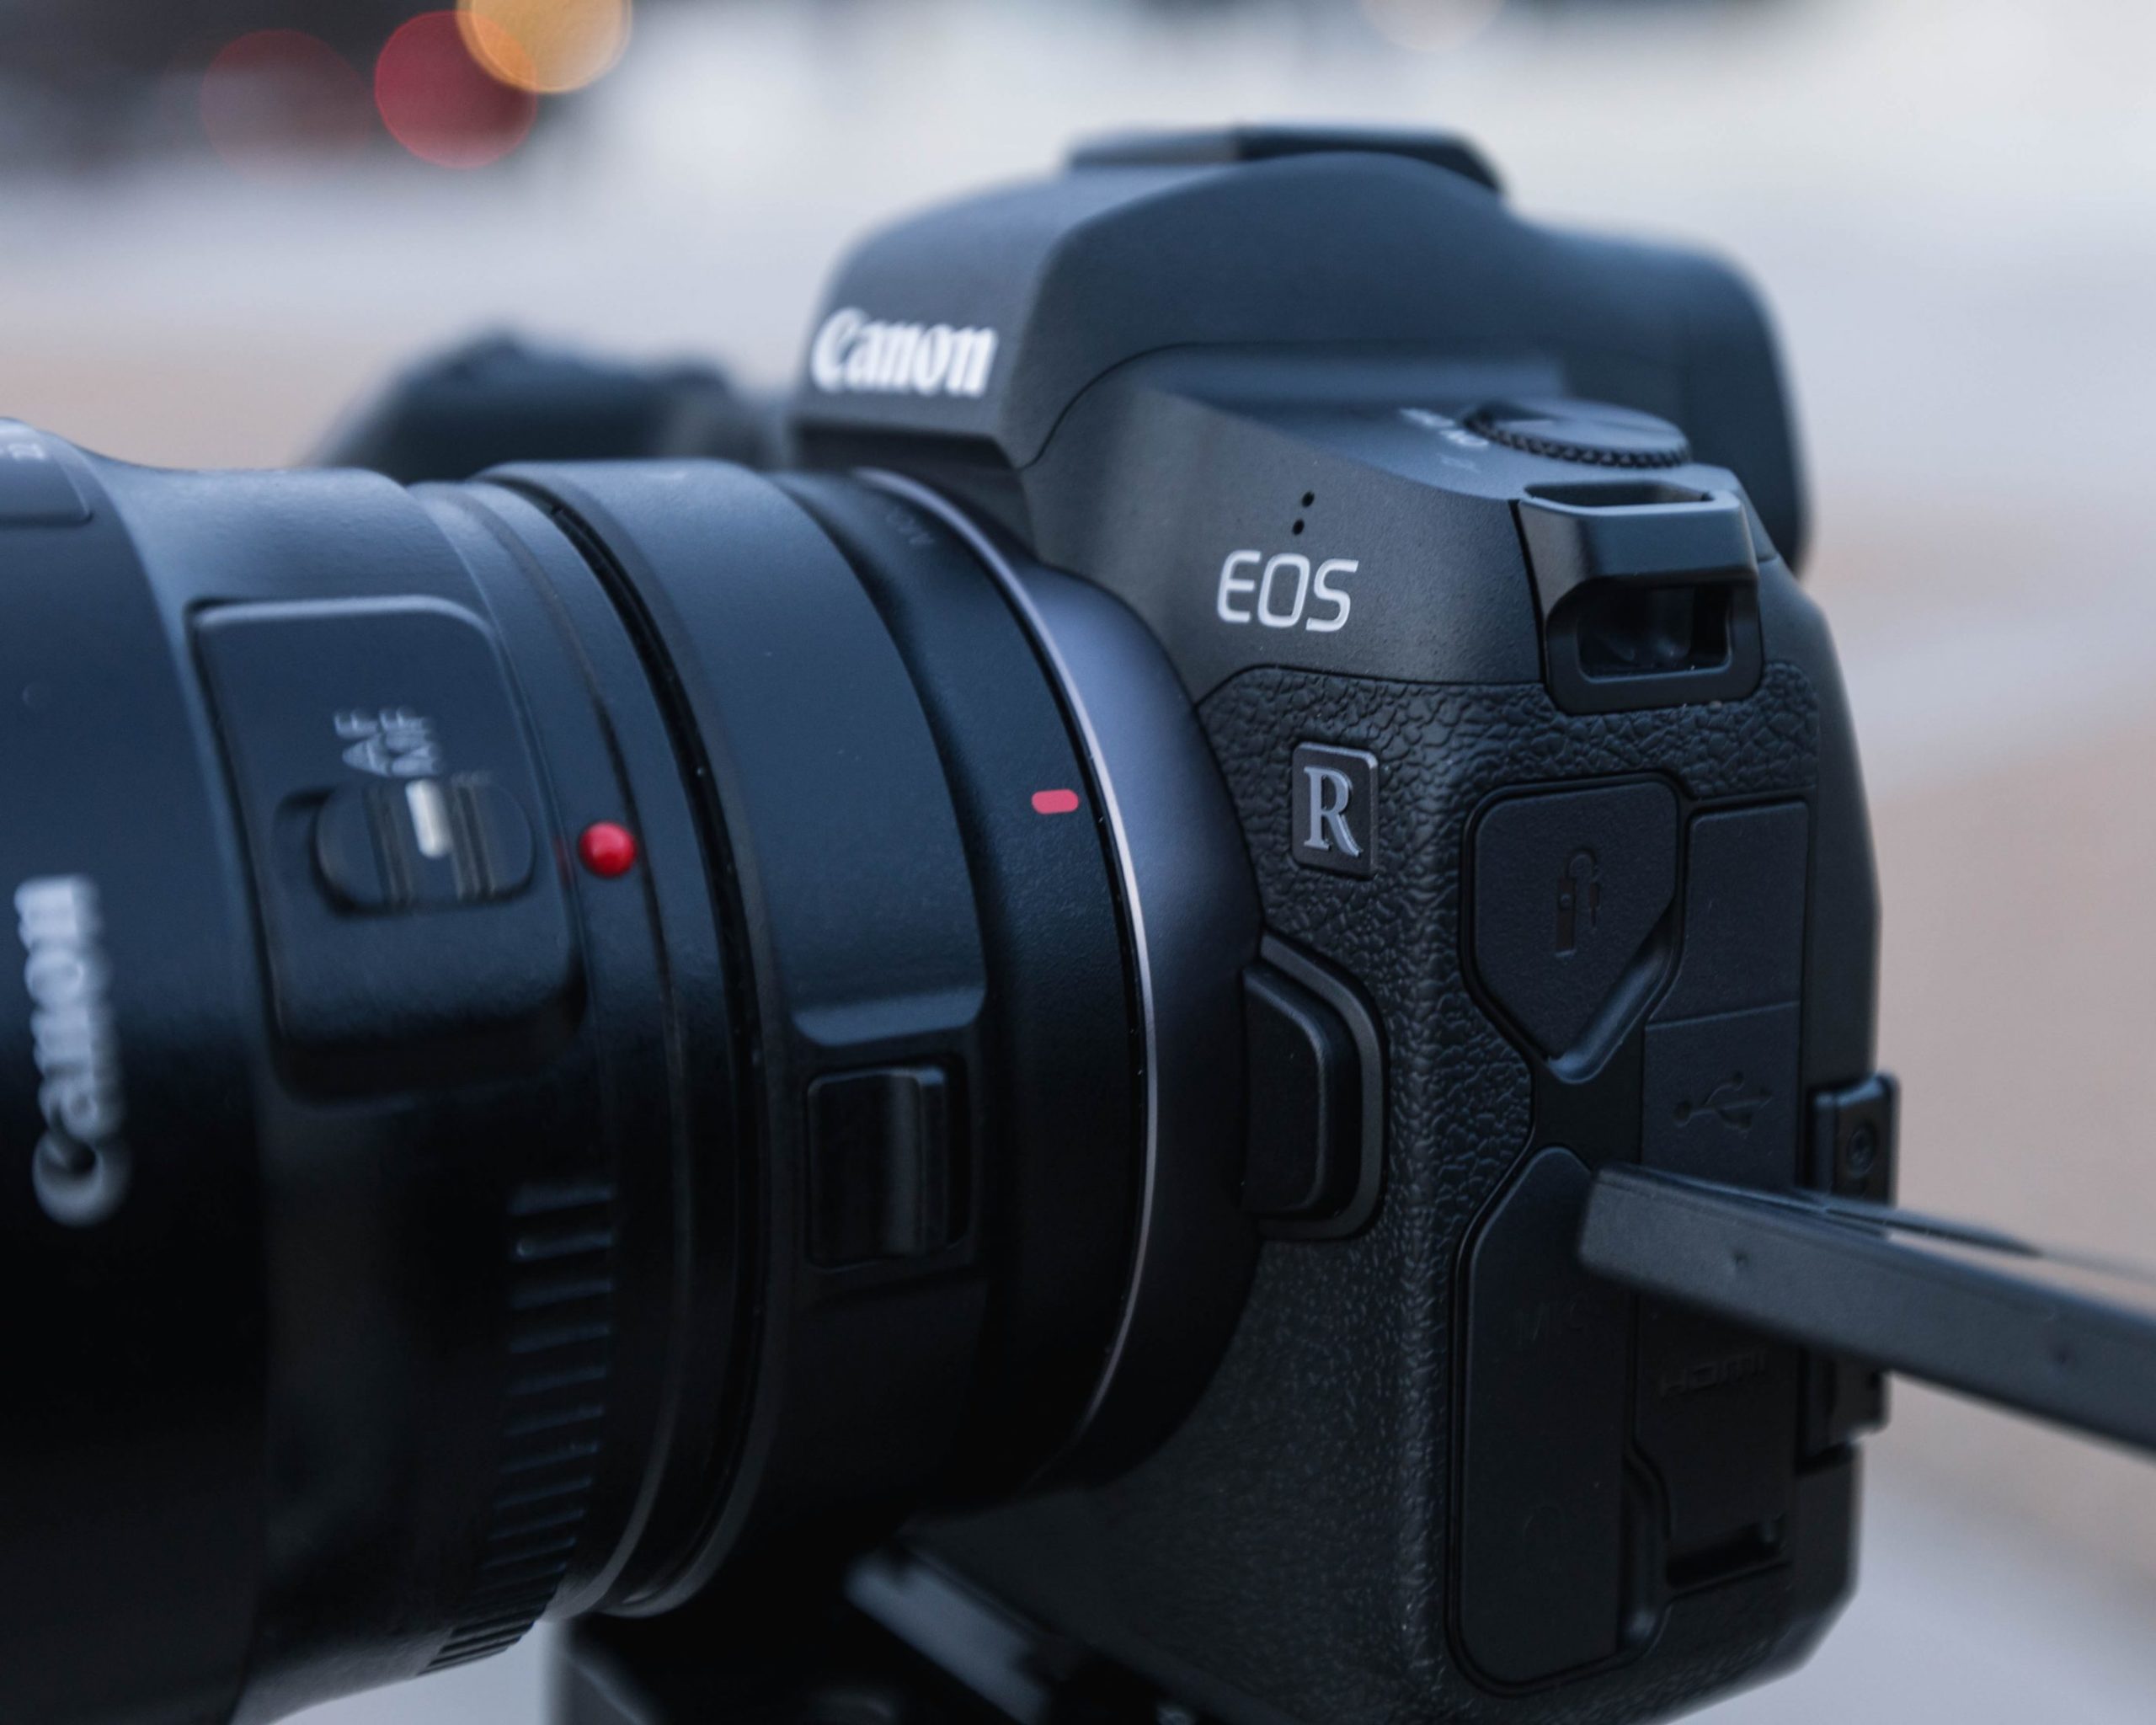 Camara Canon EOS R, comprar EOS R